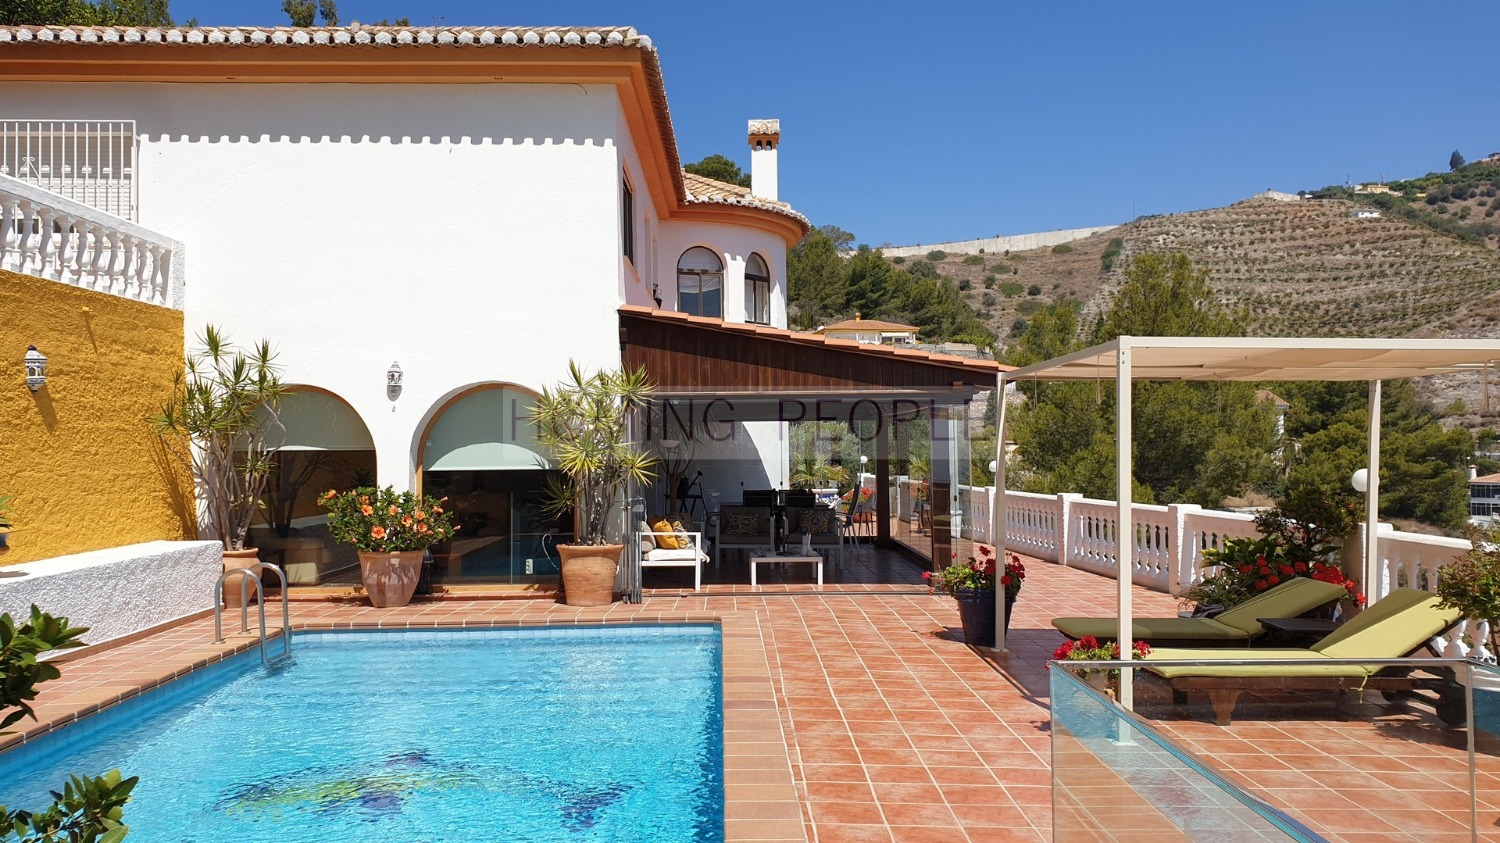 Villa con piscina y vistas al mar, situado en zona residencial muy apreciada